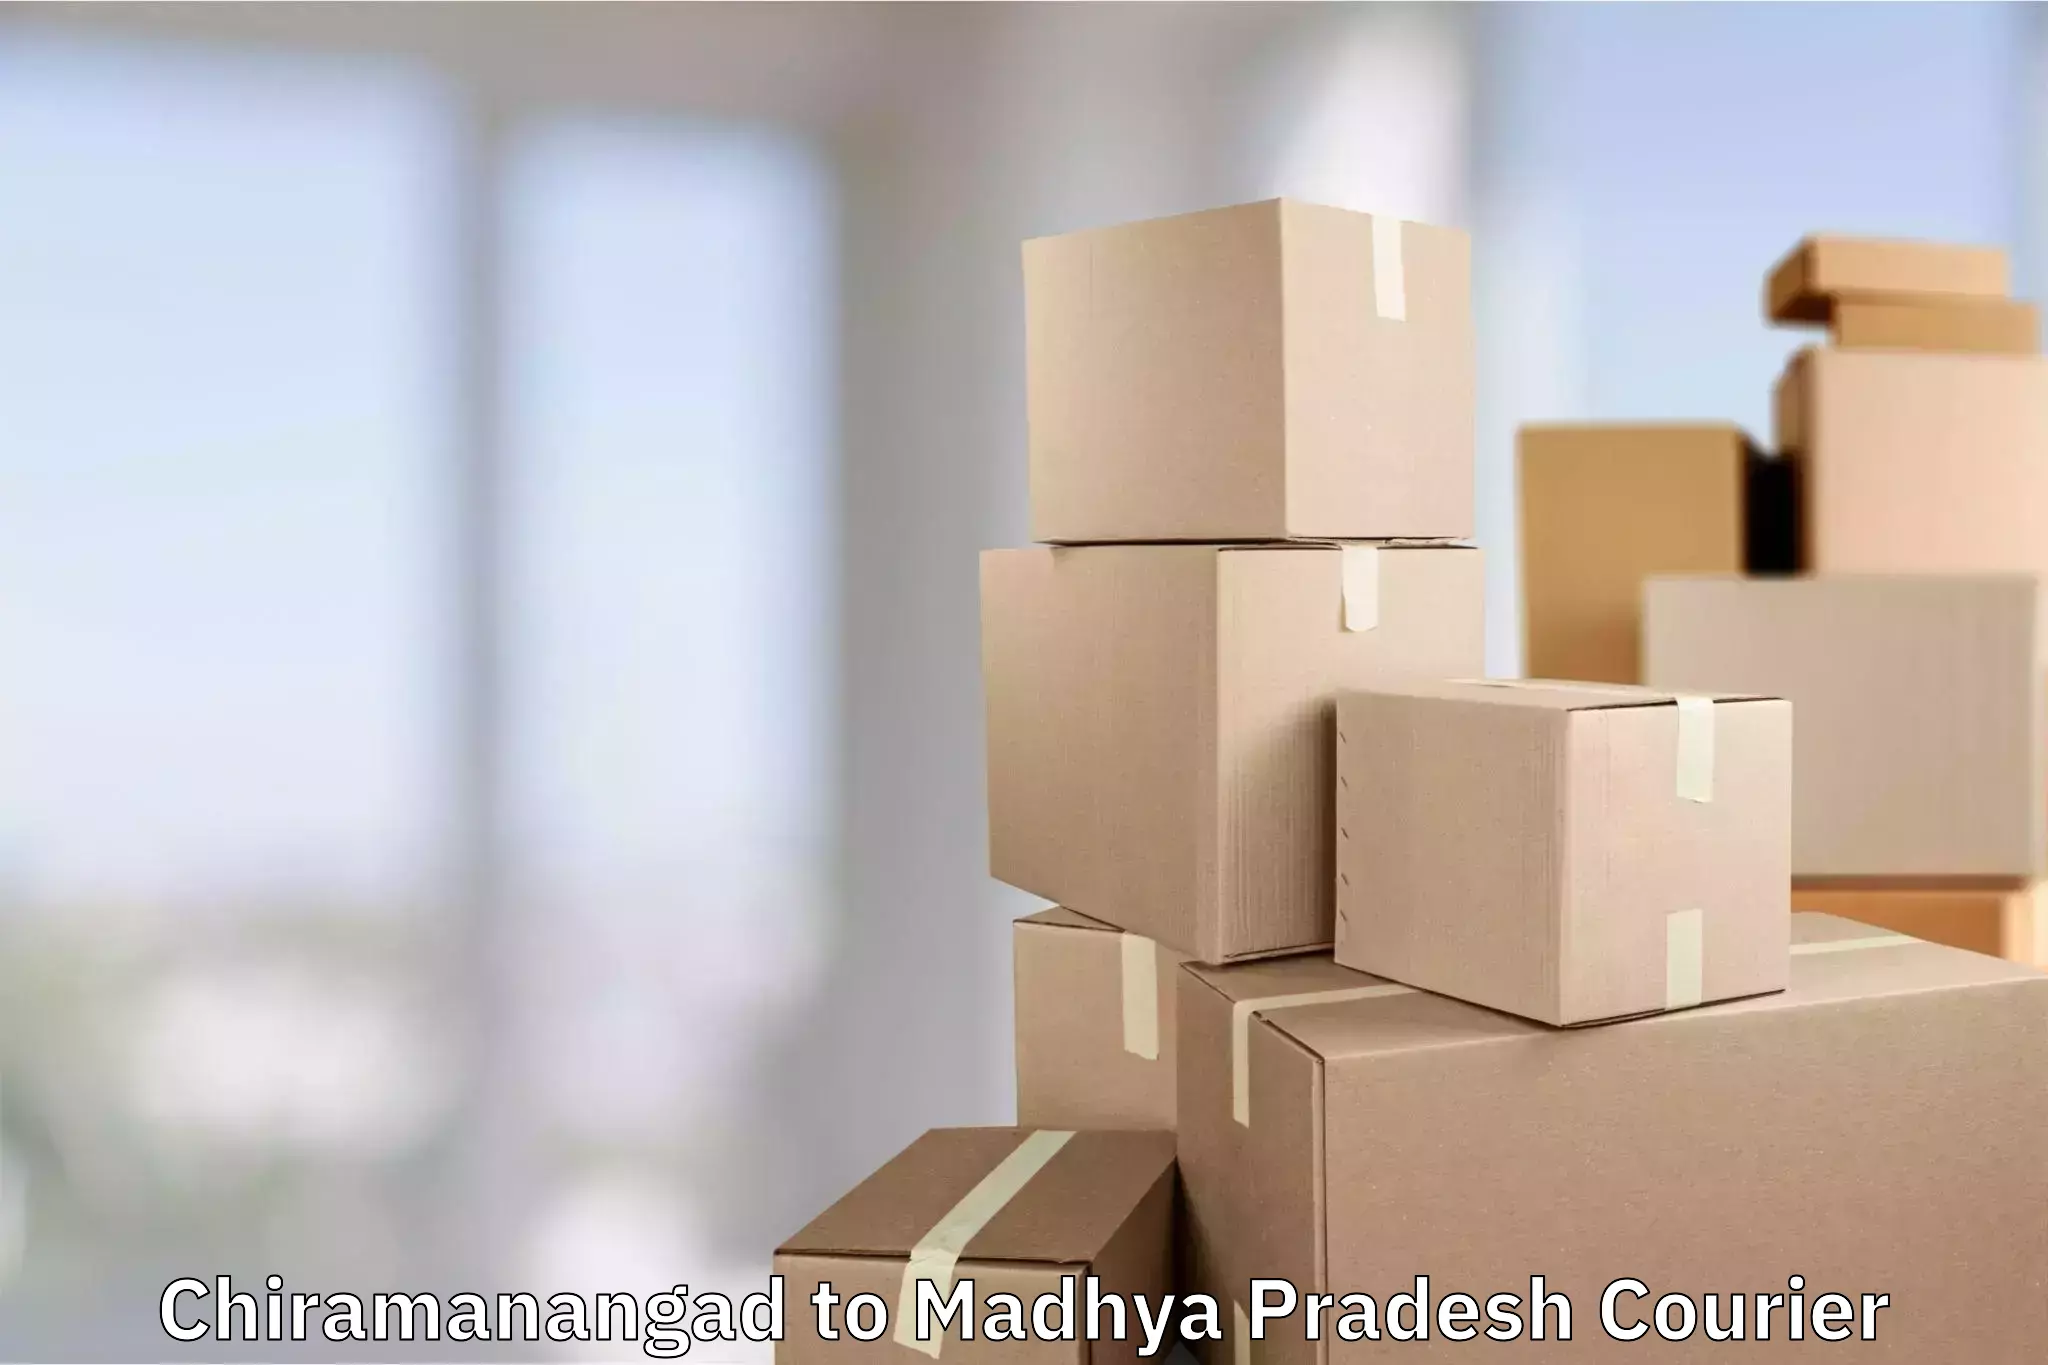 Luggage shipment specialists Chiramanangad to Madhya Pradesh